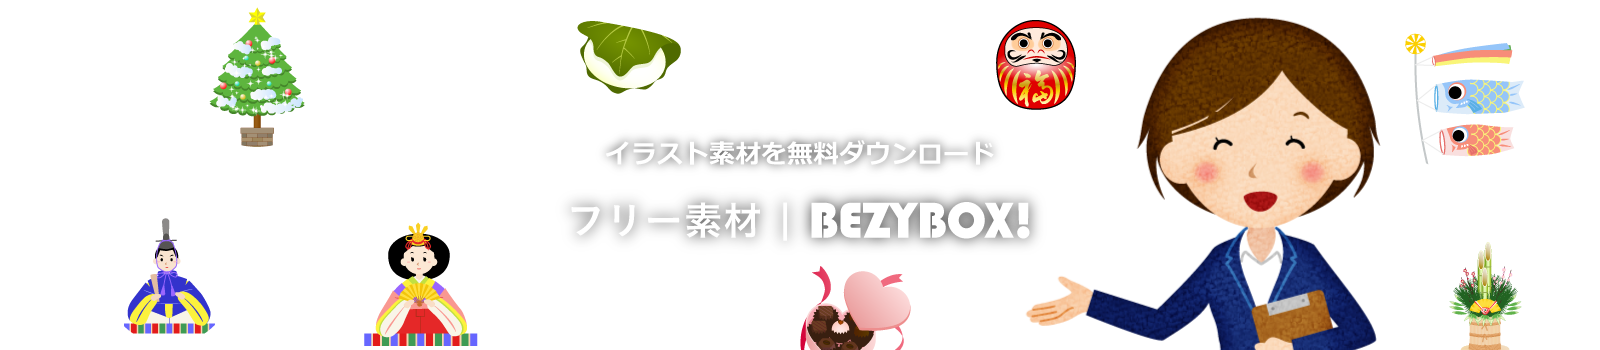 商用可のイラスト素材集 - フリー素材 | BEZYBOX!